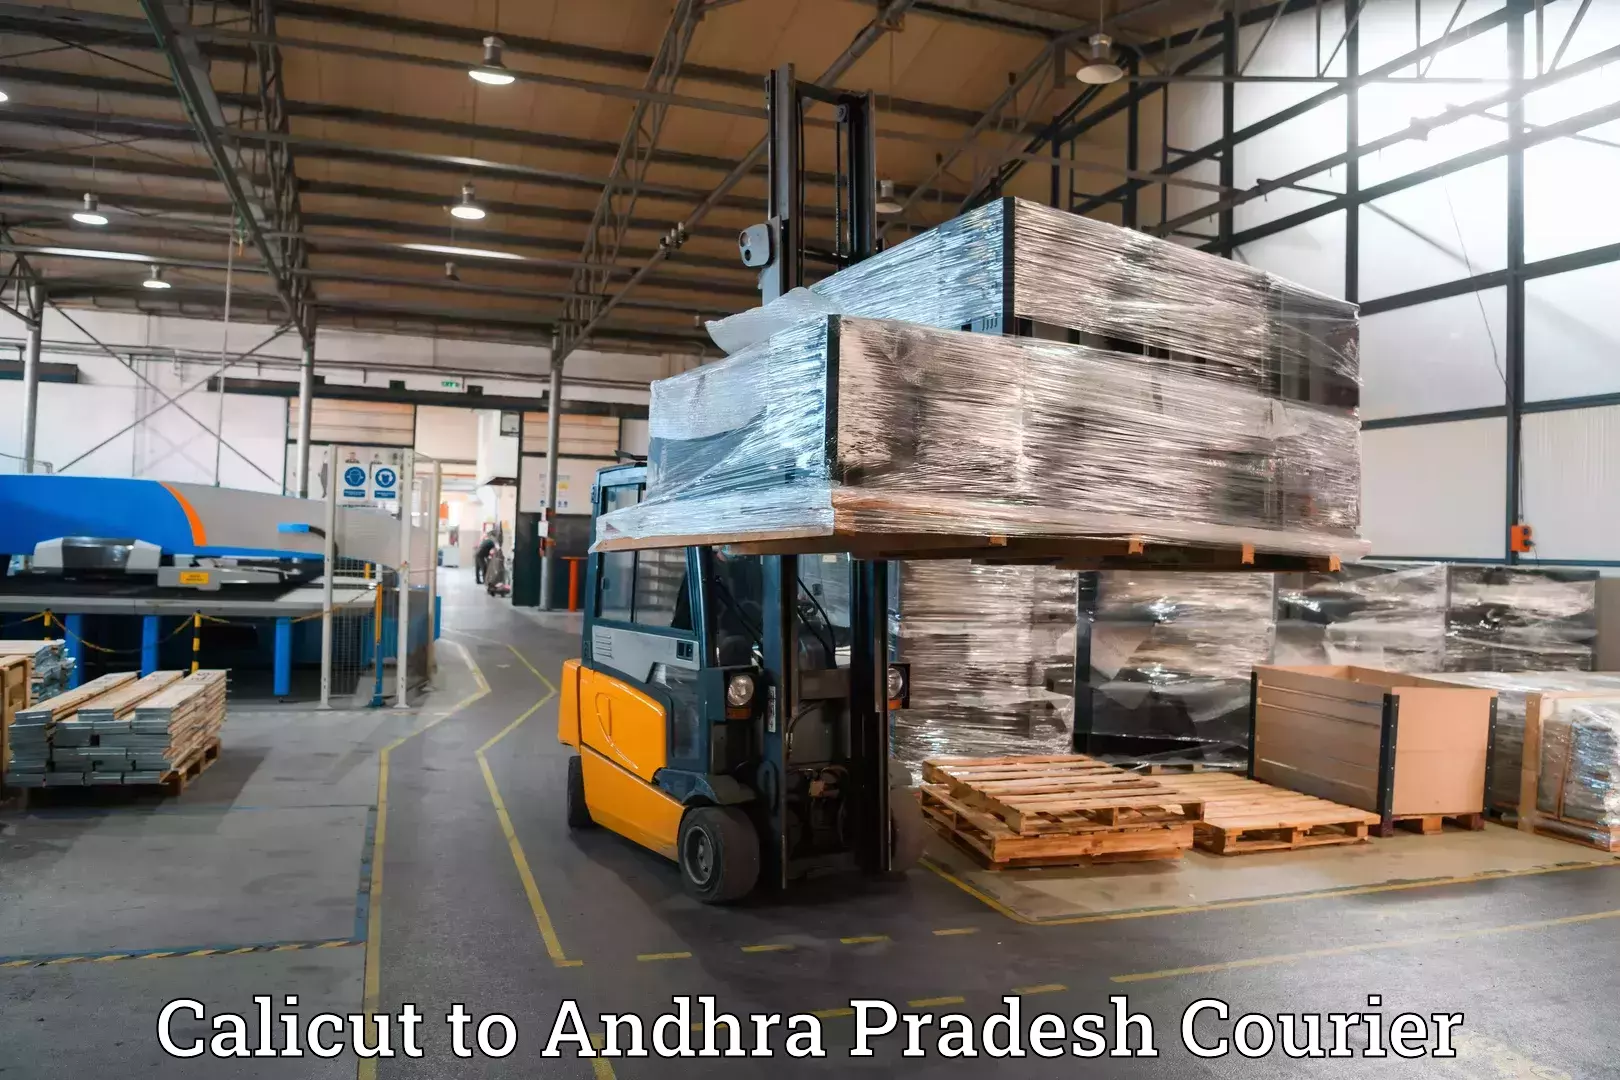 Baggage shipping experts Calicut to Andhra Pradesh